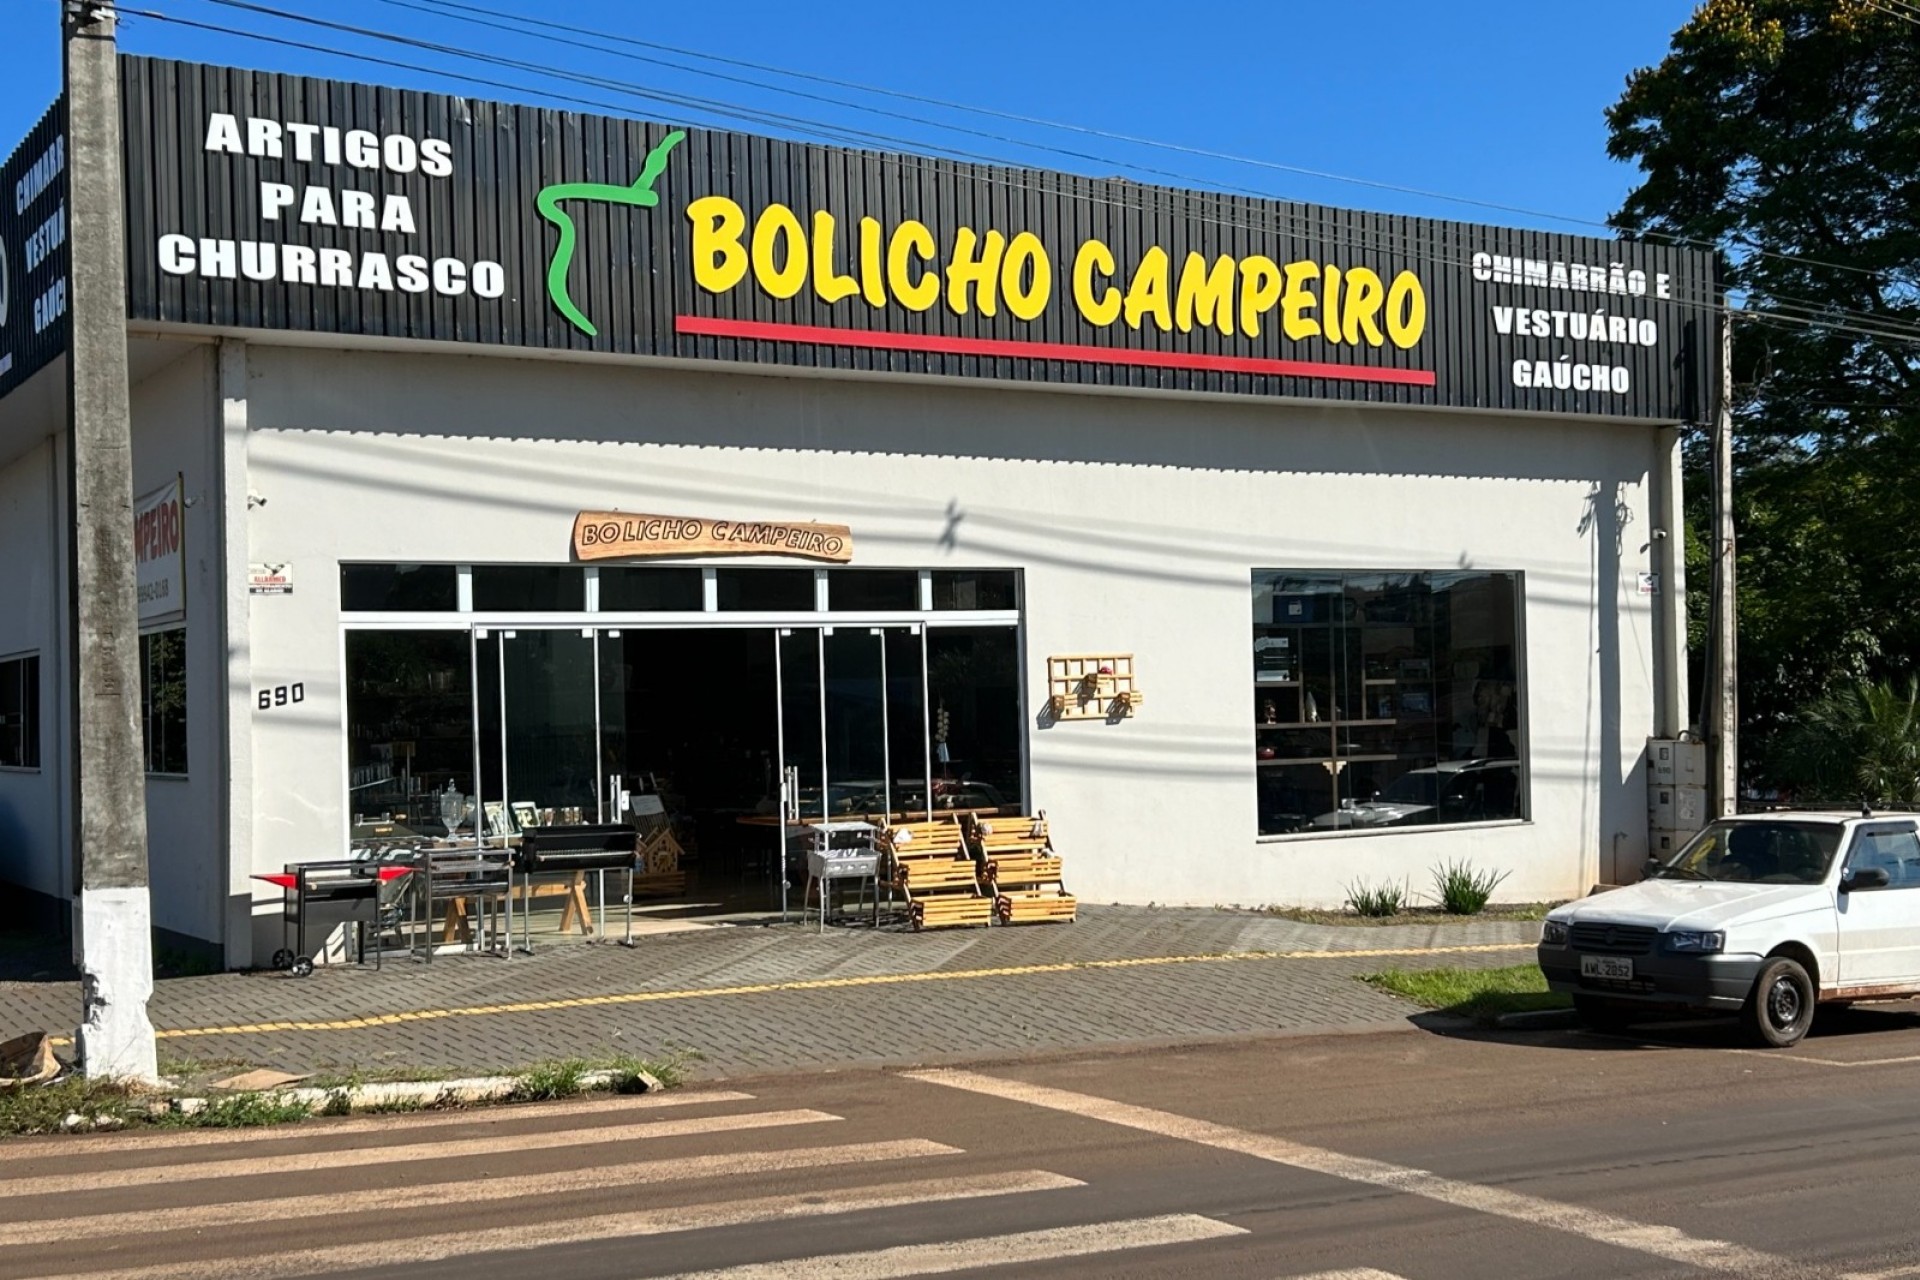 Já conhece a tradicional loja do Bolicho Campeiro em Medianeira?